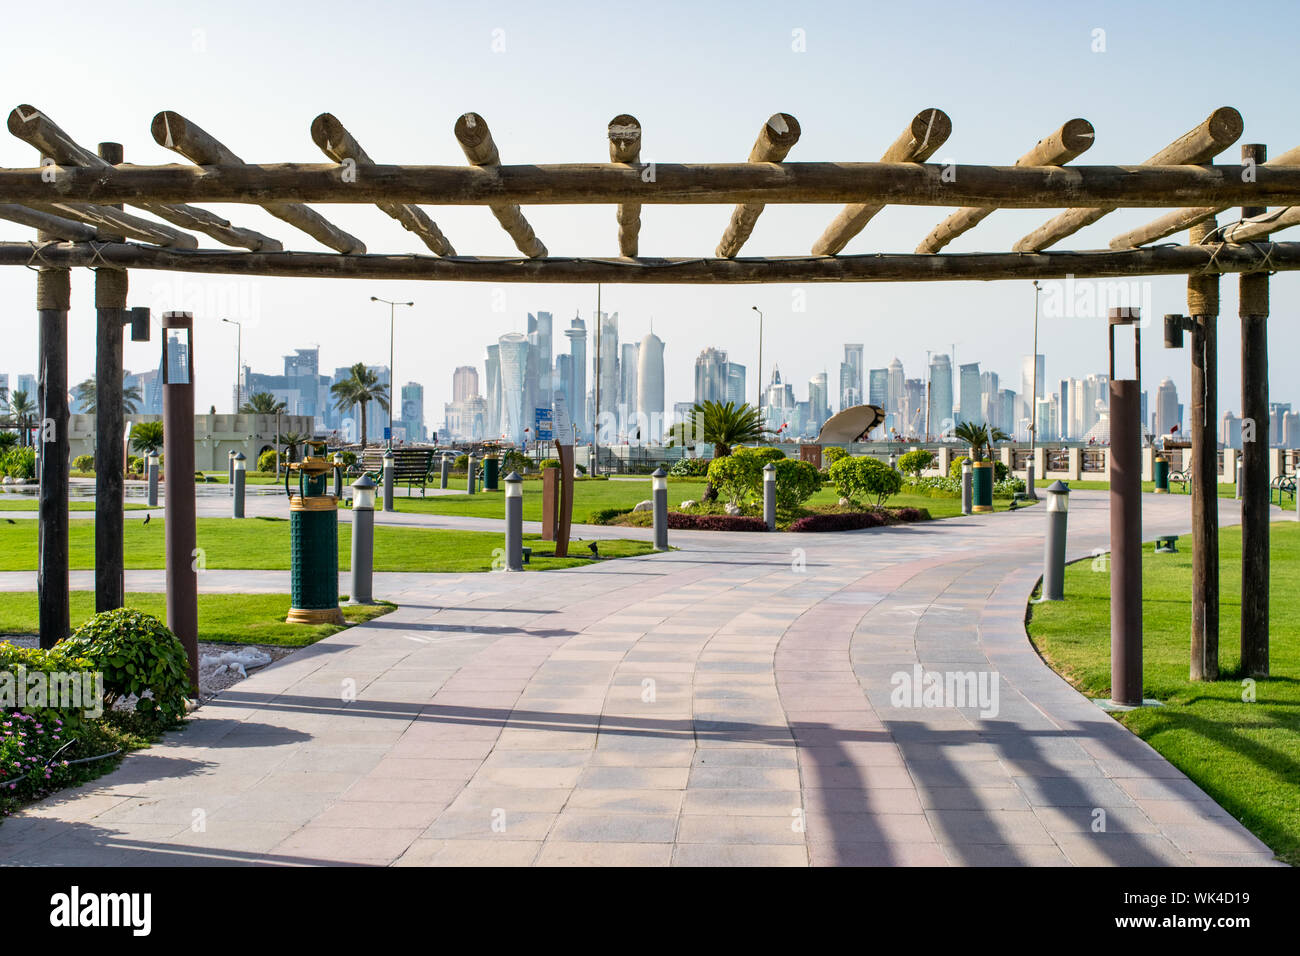 Entrée en bois traditionnel à un parc de la ville par la Corniche, avec vue sur la baie Ouest Skyline - Doha, Qatar Banque D'Images